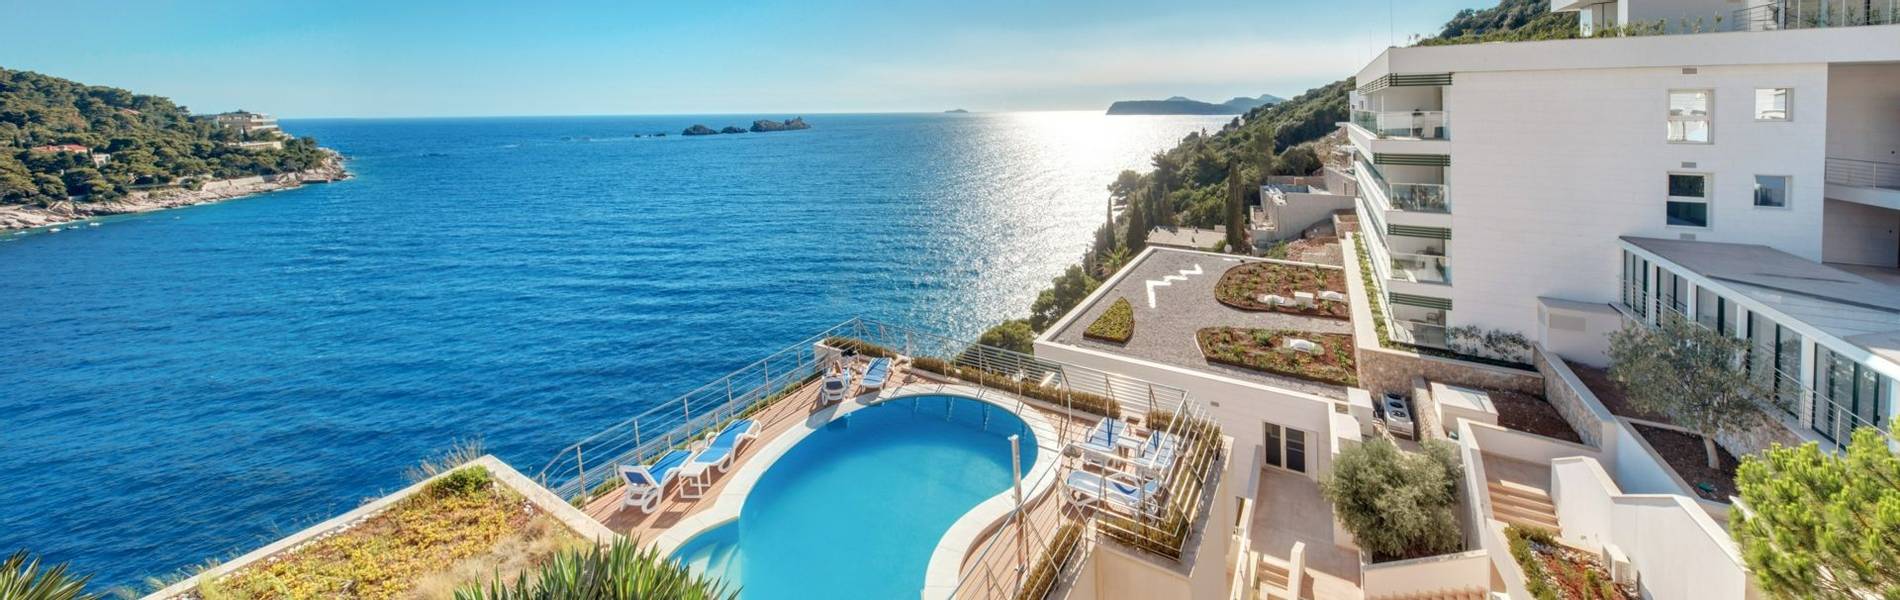 Hotel More, Dubrovnik, Croatia (2).jpg